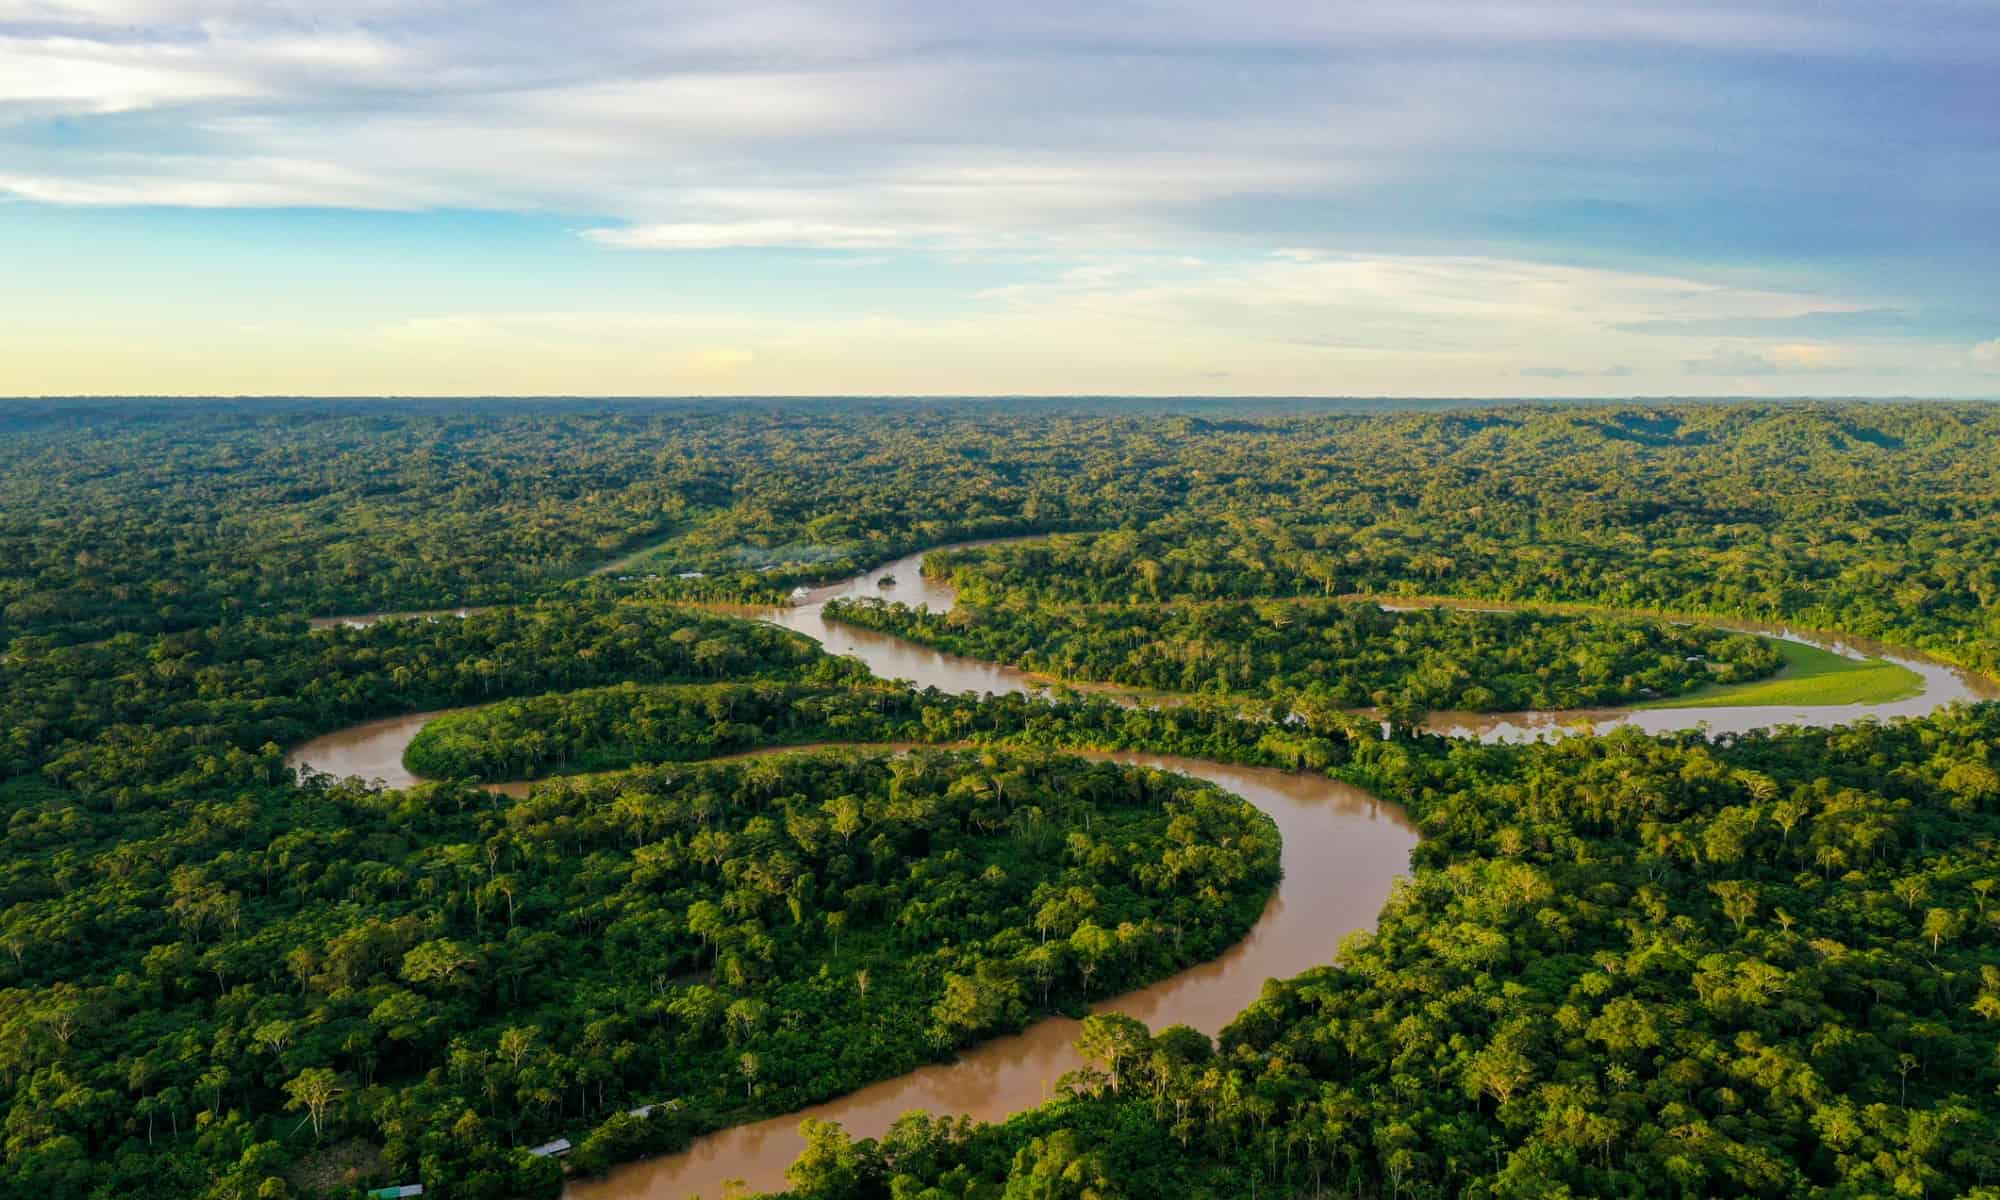 Cât de mare este pădurea tropicală amazoniană?  Comparați dimensiunea sa în mile, acri, kilometri și multe altele!  - Povestea călătoriilor